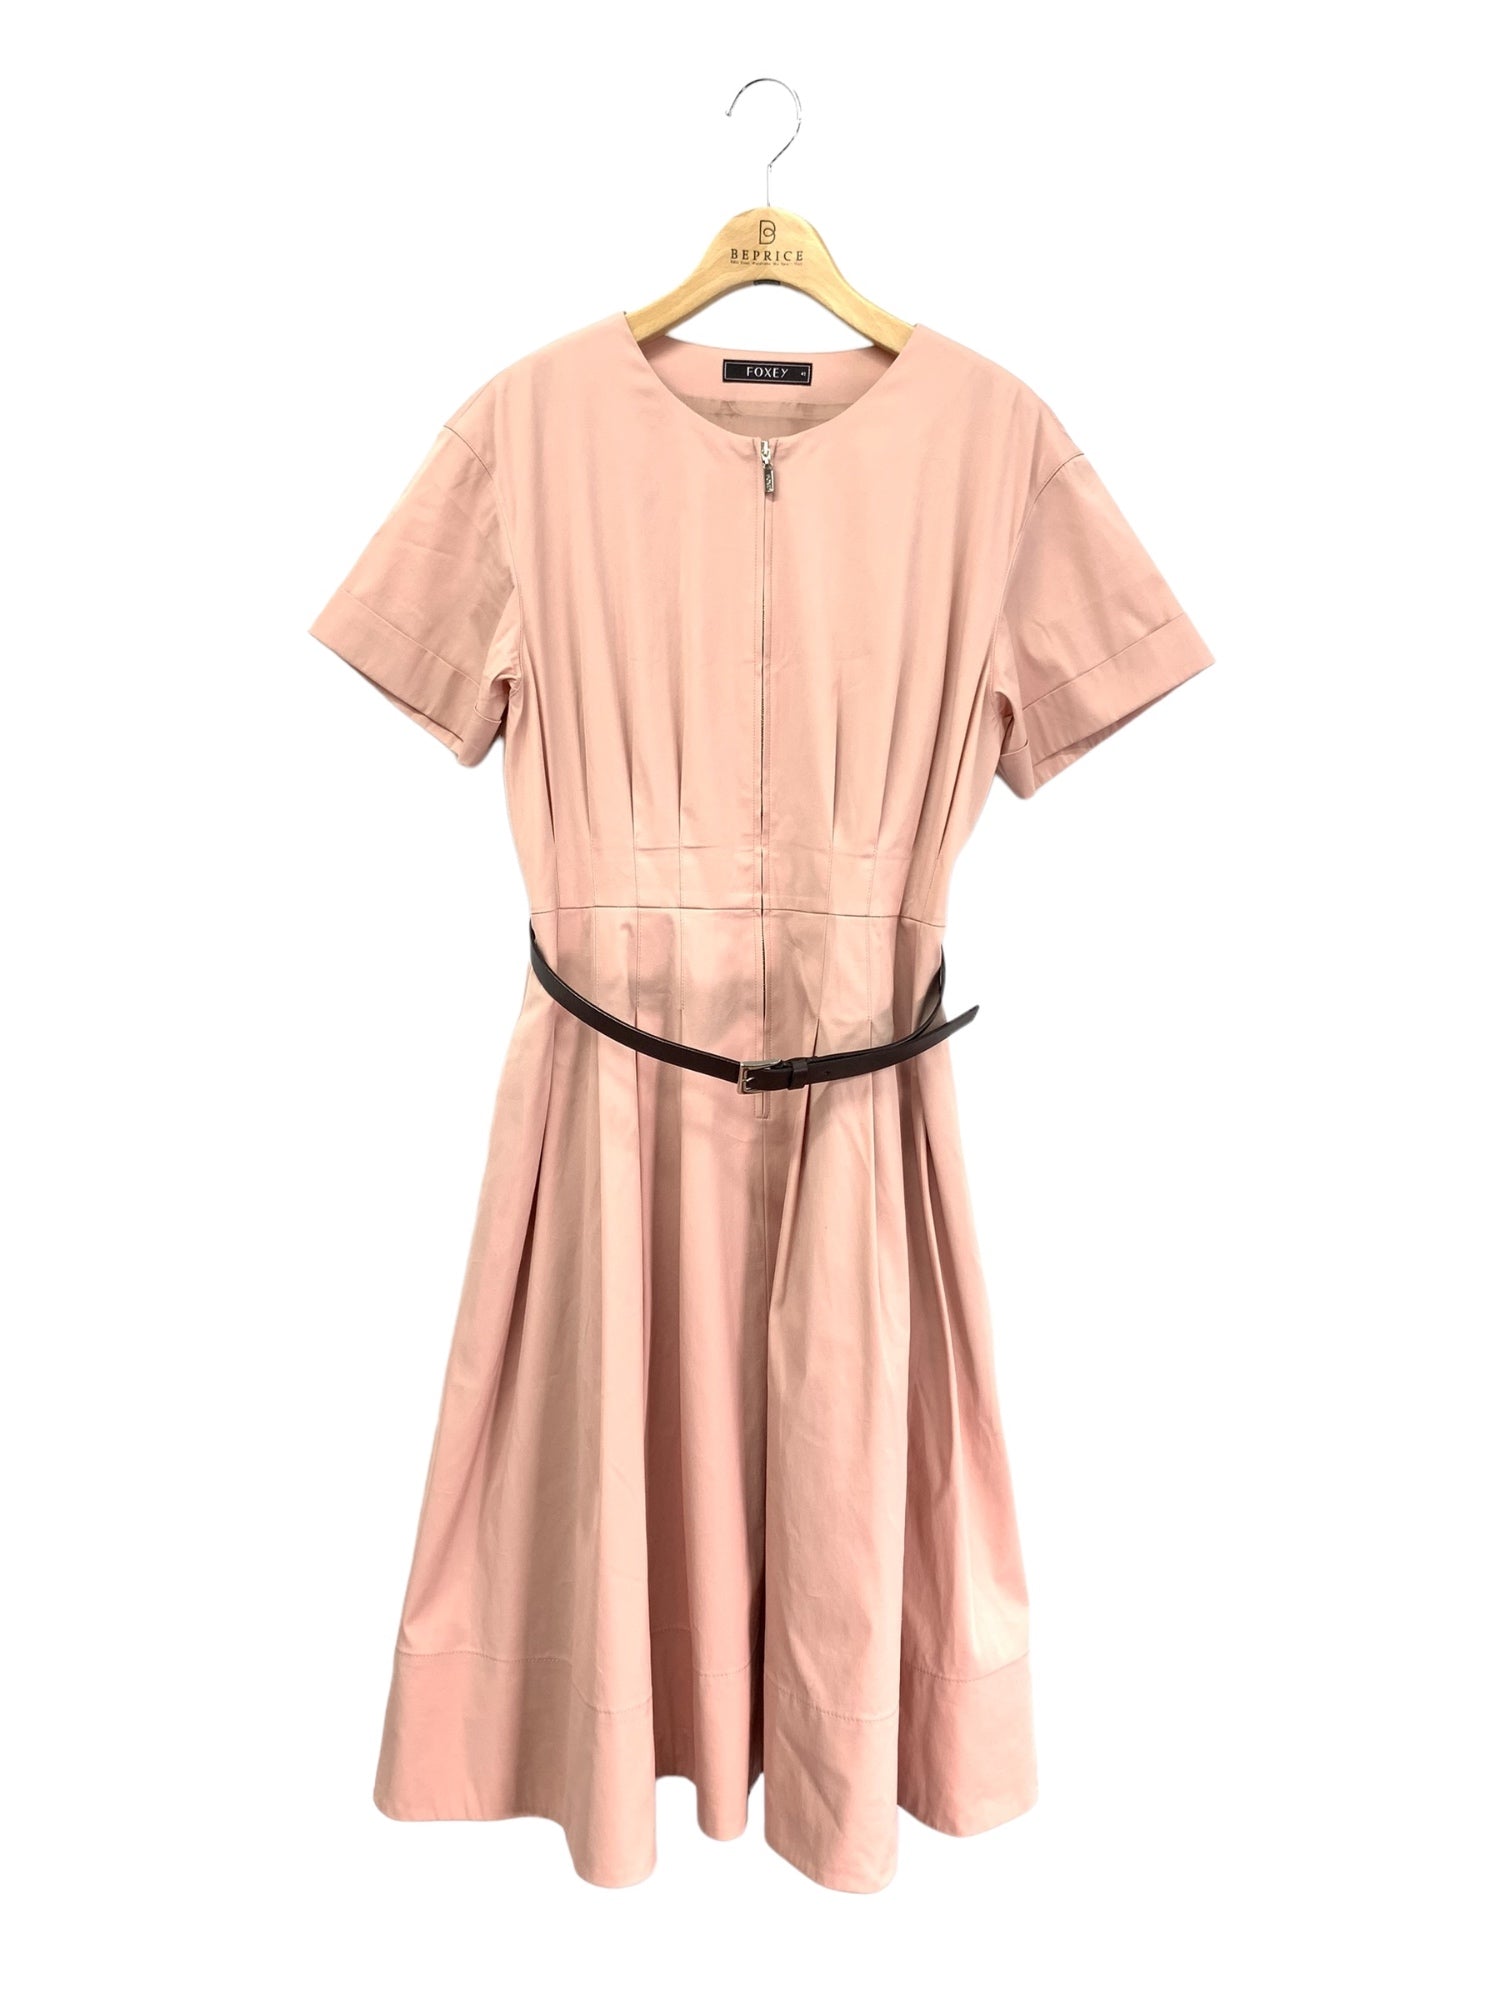 フォクシーブティック Dress(Chesca) 41451 ワンピース 42 ピンク 